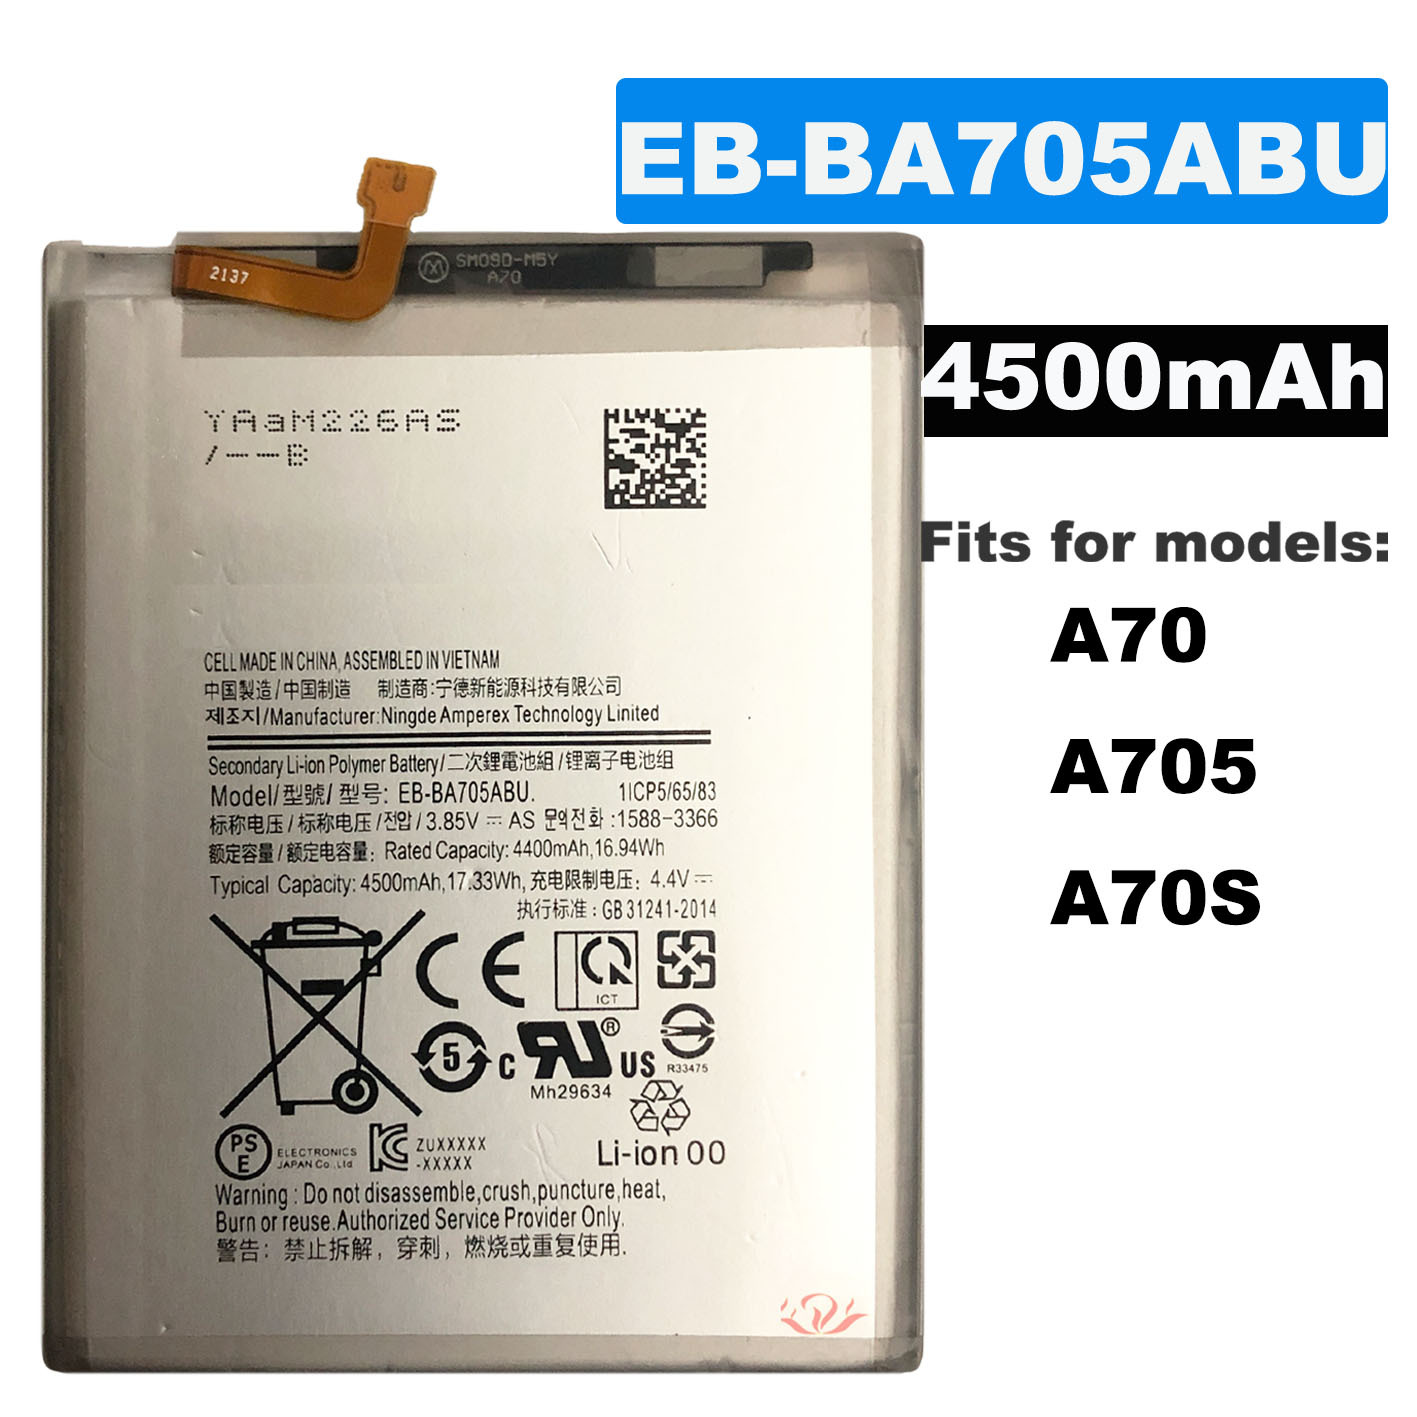 适用于三星EB-BA705ABU手机内置电池,A70电池,A705电池,A70S电池